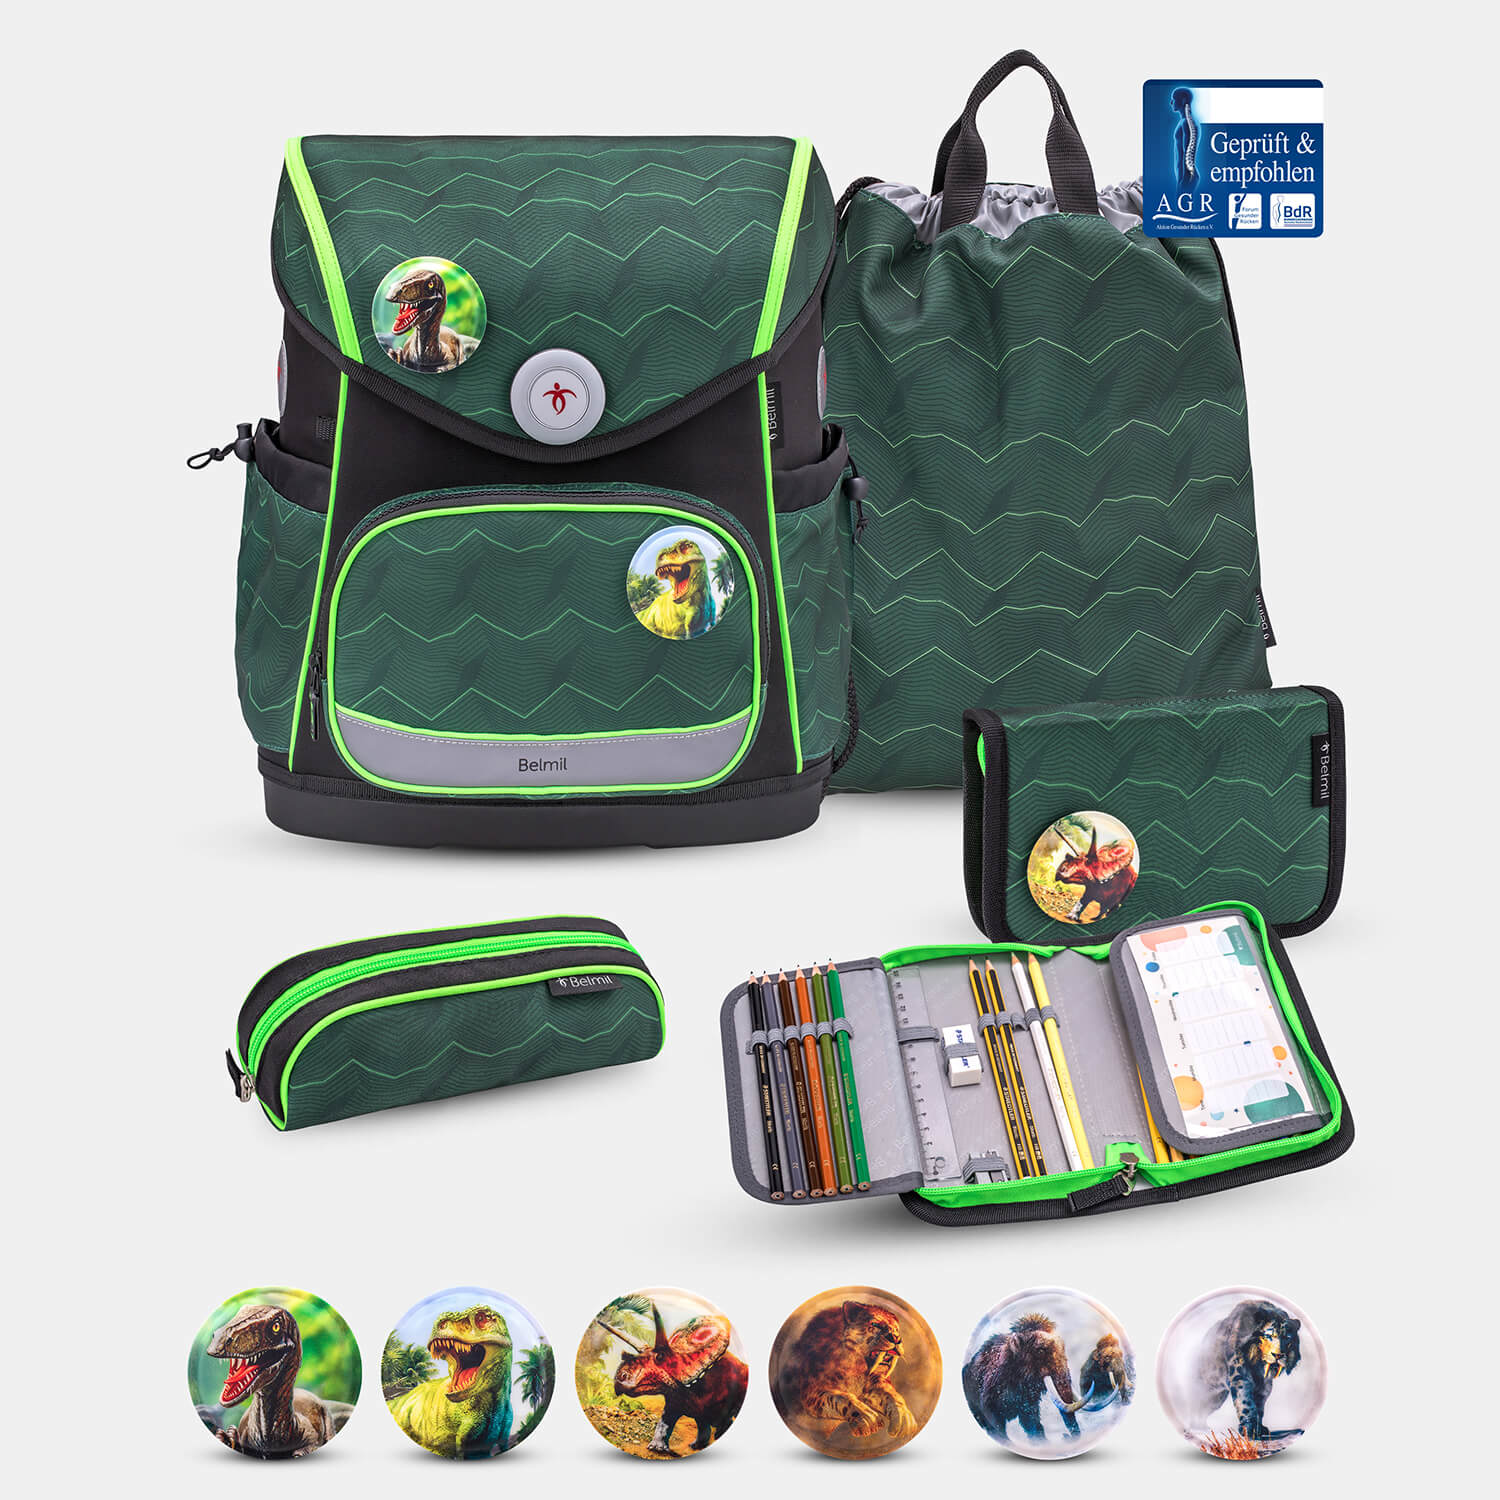 Compact Plus Twist of Lime Schoolbag set 5pcs.